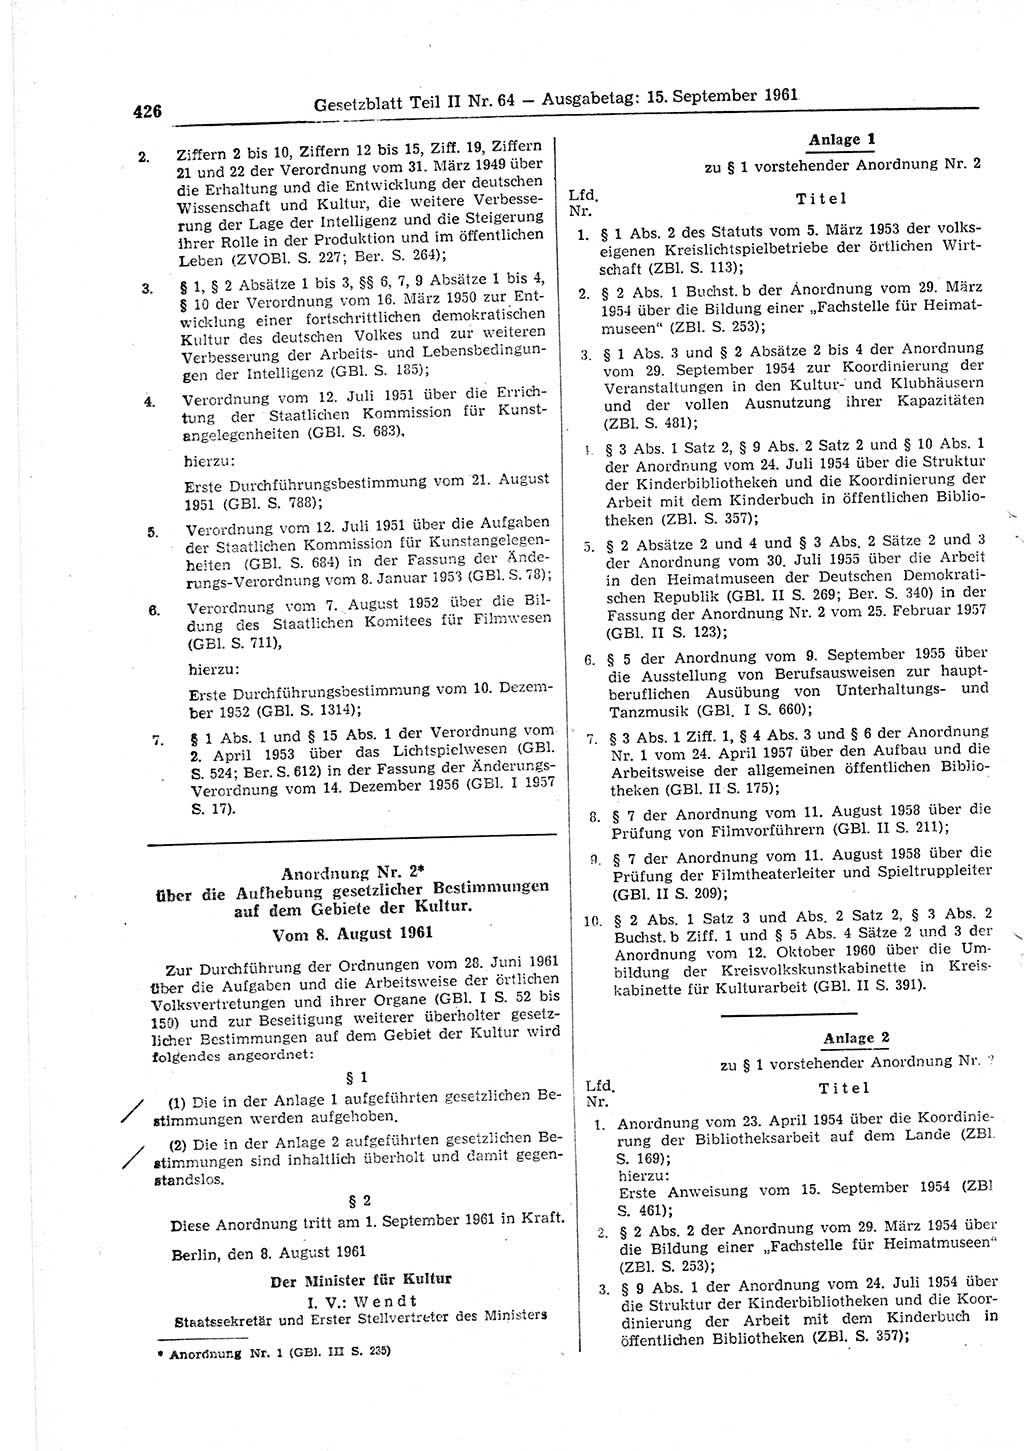 Gesetzblatt (GBl.) der Deutschen Demokratischen Republik (DDR) Teil ⅠⅠ 1961, Seite 426 (GBl. DDR ⅠⅠ 1961, S. 426)